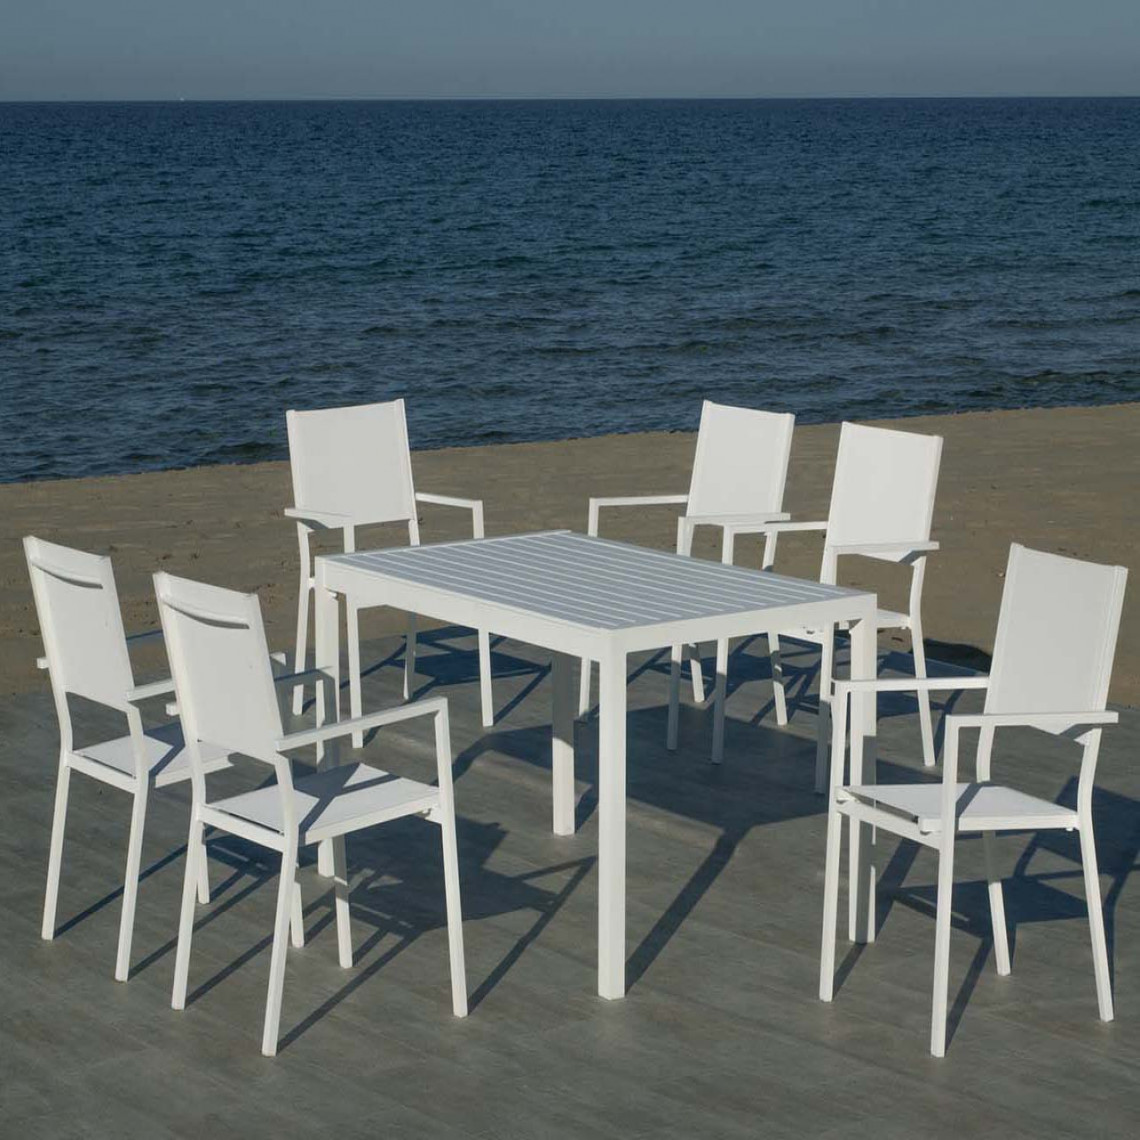 Hevea - Salon de jardin en aluminium 6 personnes Palma roma - Ensembles tables et chaises